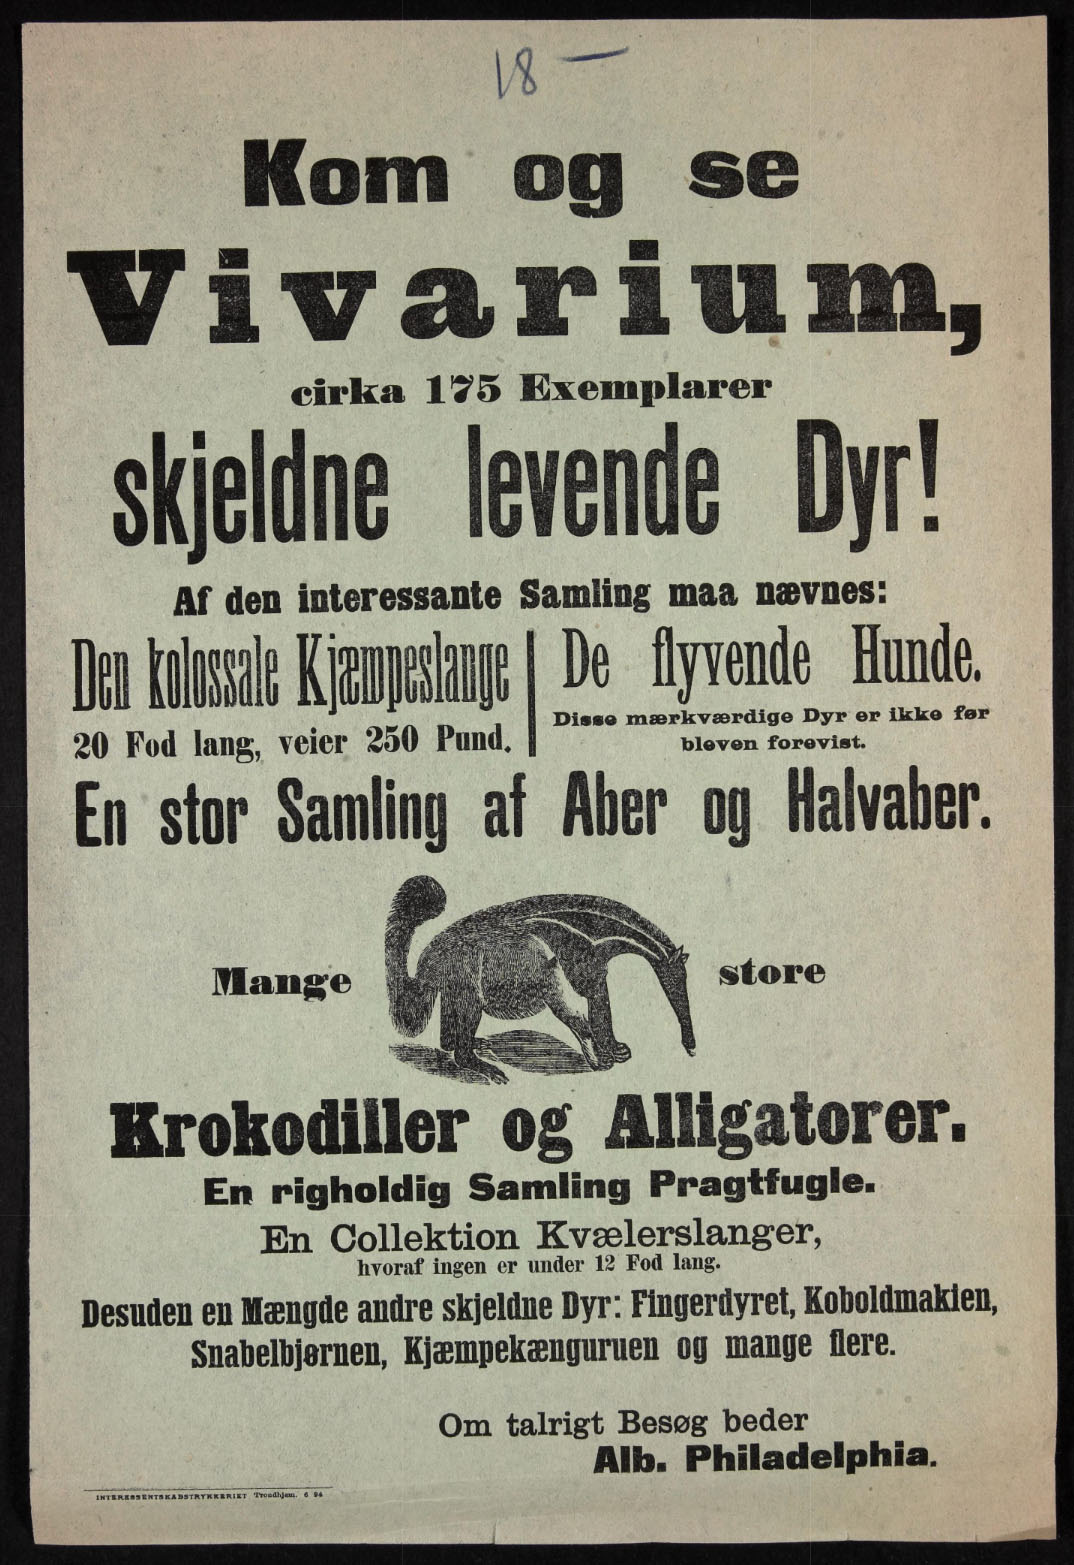 Tekstplakat «Kom og se - Vivarium - skjeldne levende Dyr!». Mange dyr nevnes, og med en illustrasjon av en maursluker